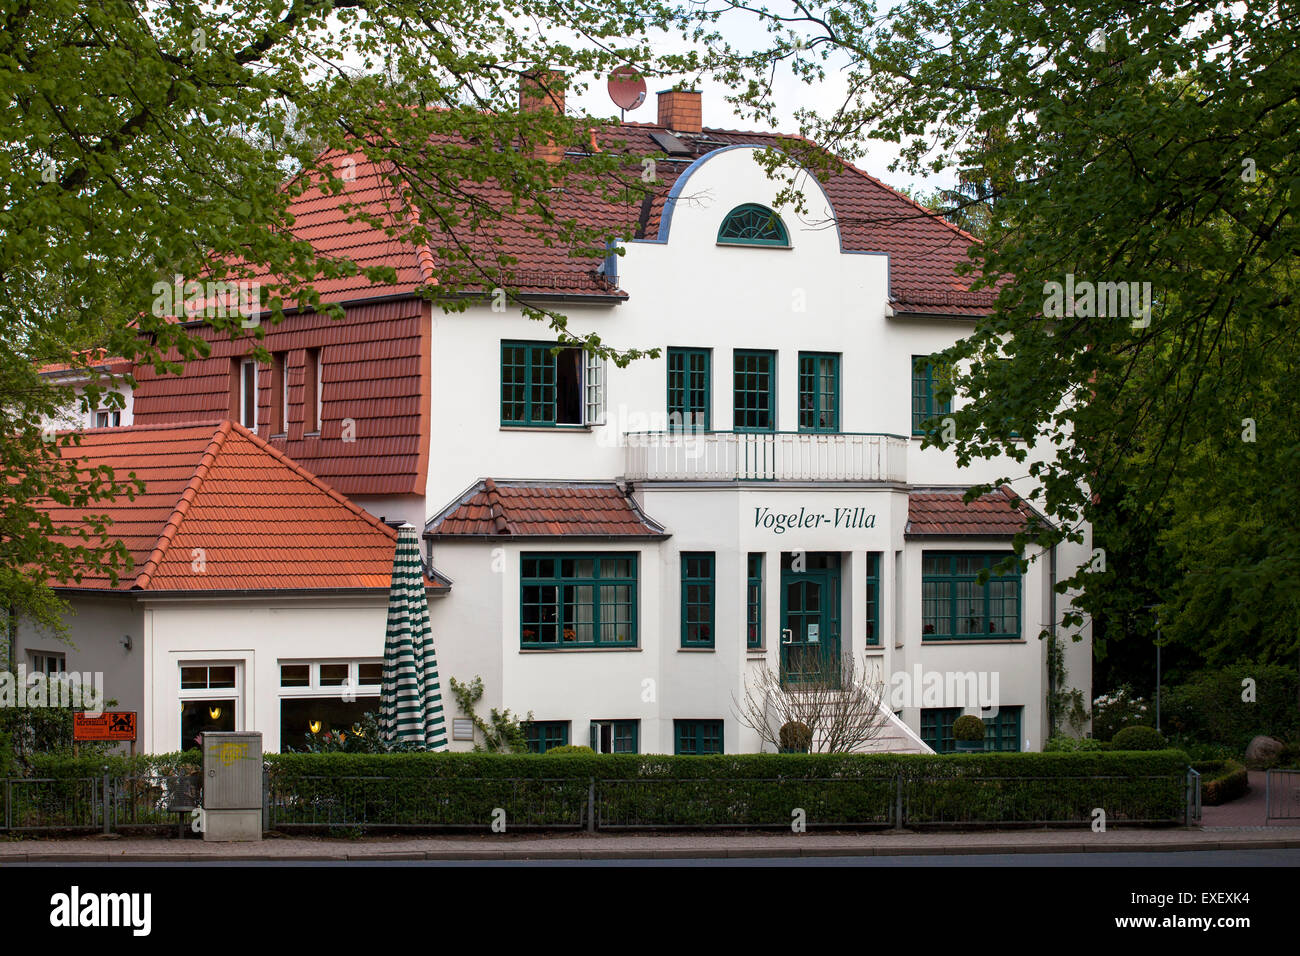 L'Europa, Germania, Bassa Sassonia, Worpswede, il Vogeler-Villa, costruito da Heinrich Vogeler, oggi una vecchia casa di riposo. Europa, DEU Foto Stock